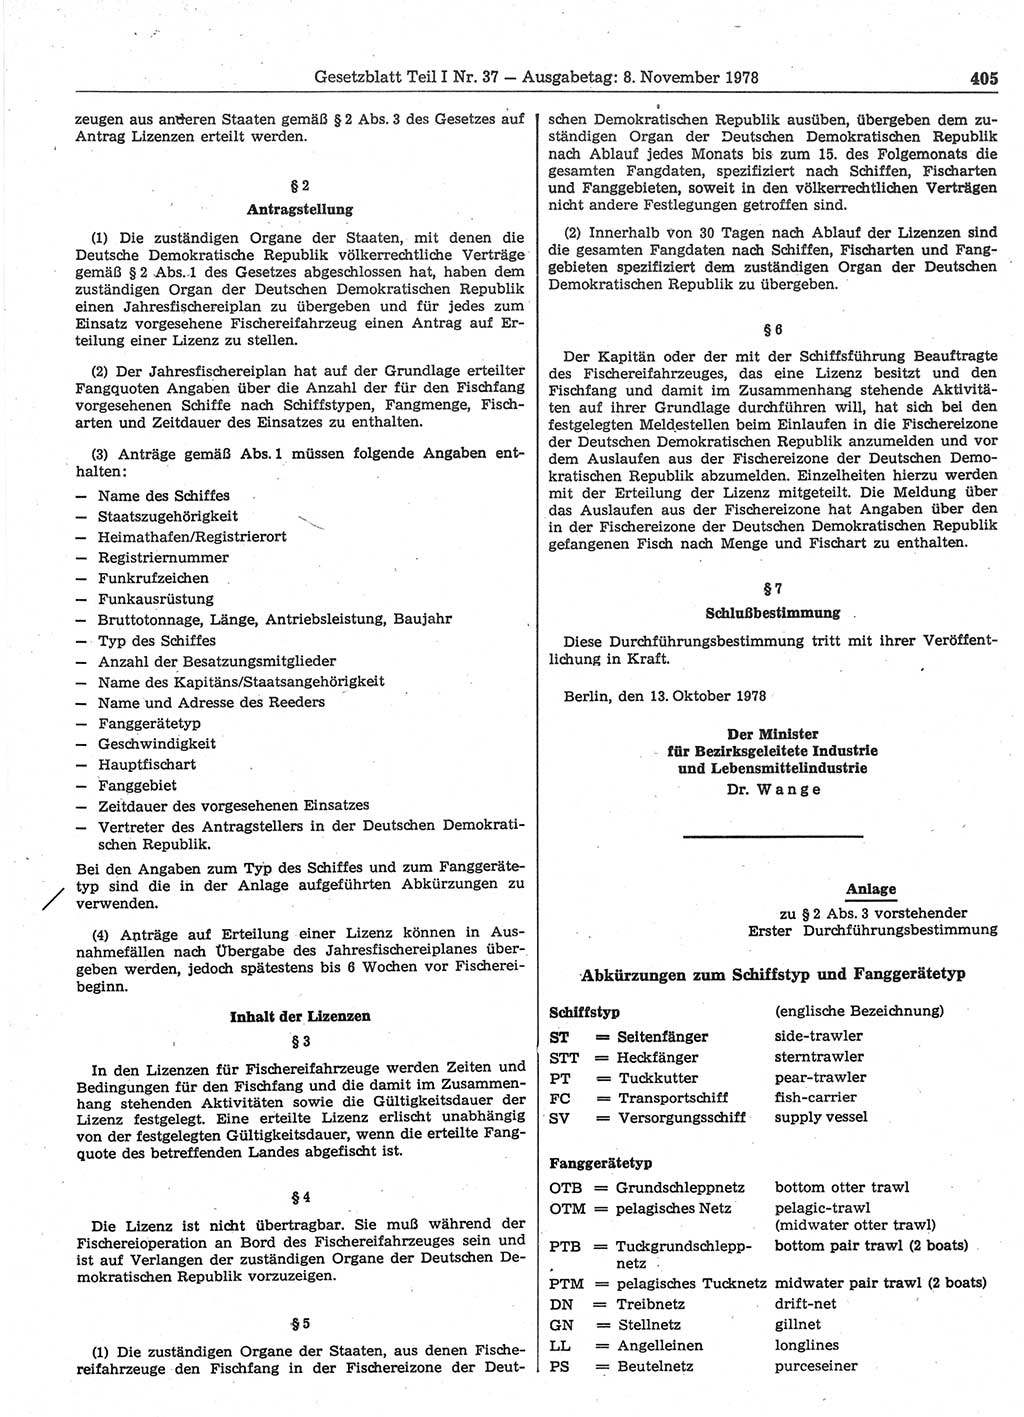 Gesetzblatt (GBl.) der Deutschen Demokratischen Republik (DDR) Teil Ⅰ 1978, Seite 405 (GBl. DDR Ⅰ 1978, S. 405)